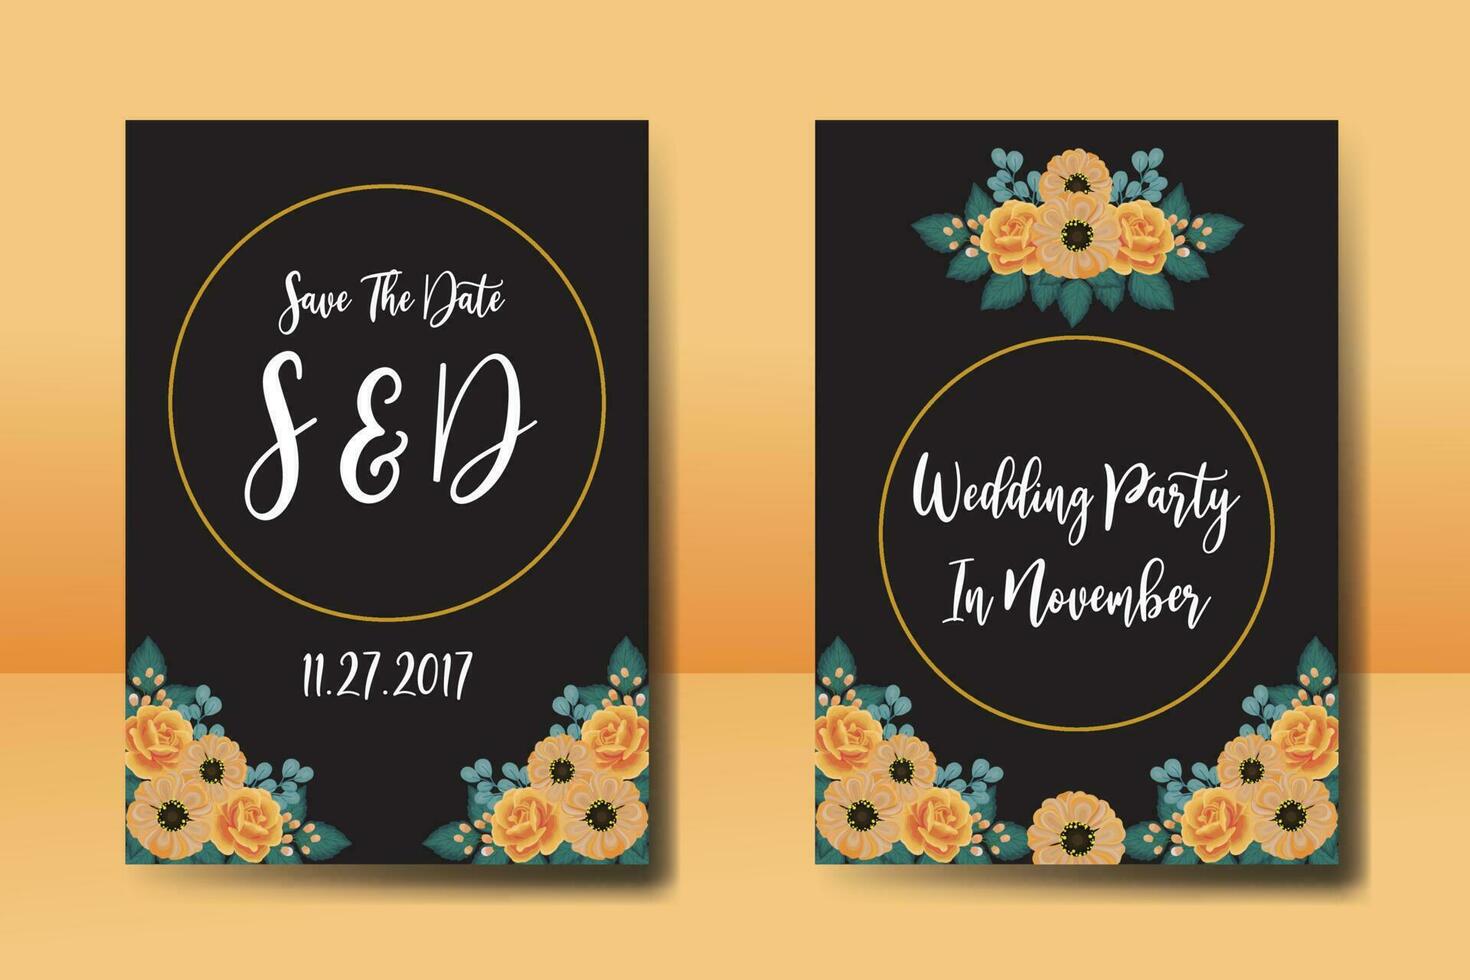 Hochzeit Einladung Rahmen Satz, Blumen- Aquarell Digital Hand gezeichnet Orange Rose und Anemone Blume Design Einladung Karte Vorlage vektor